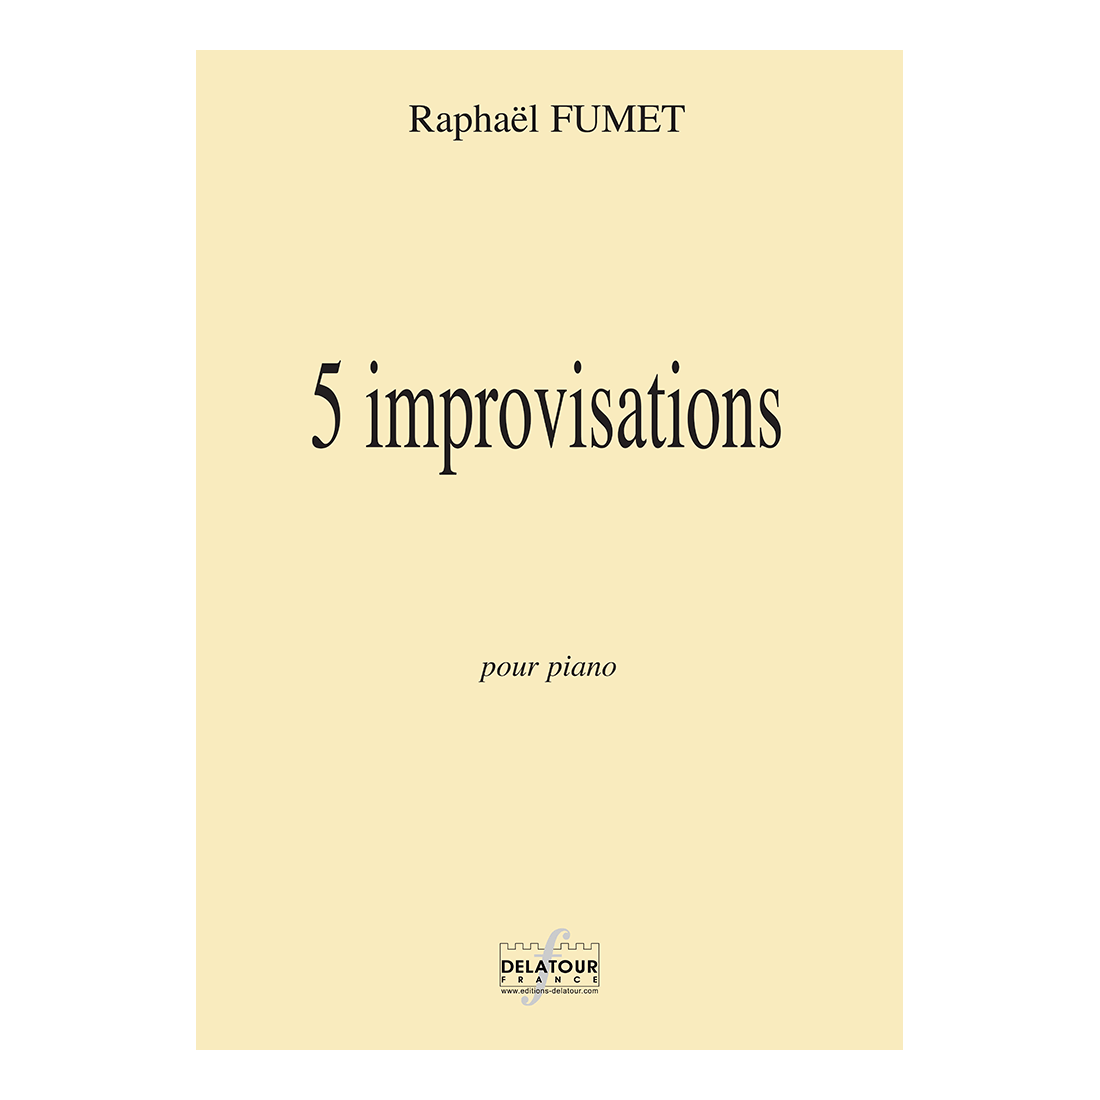 5 improvisations für klavier